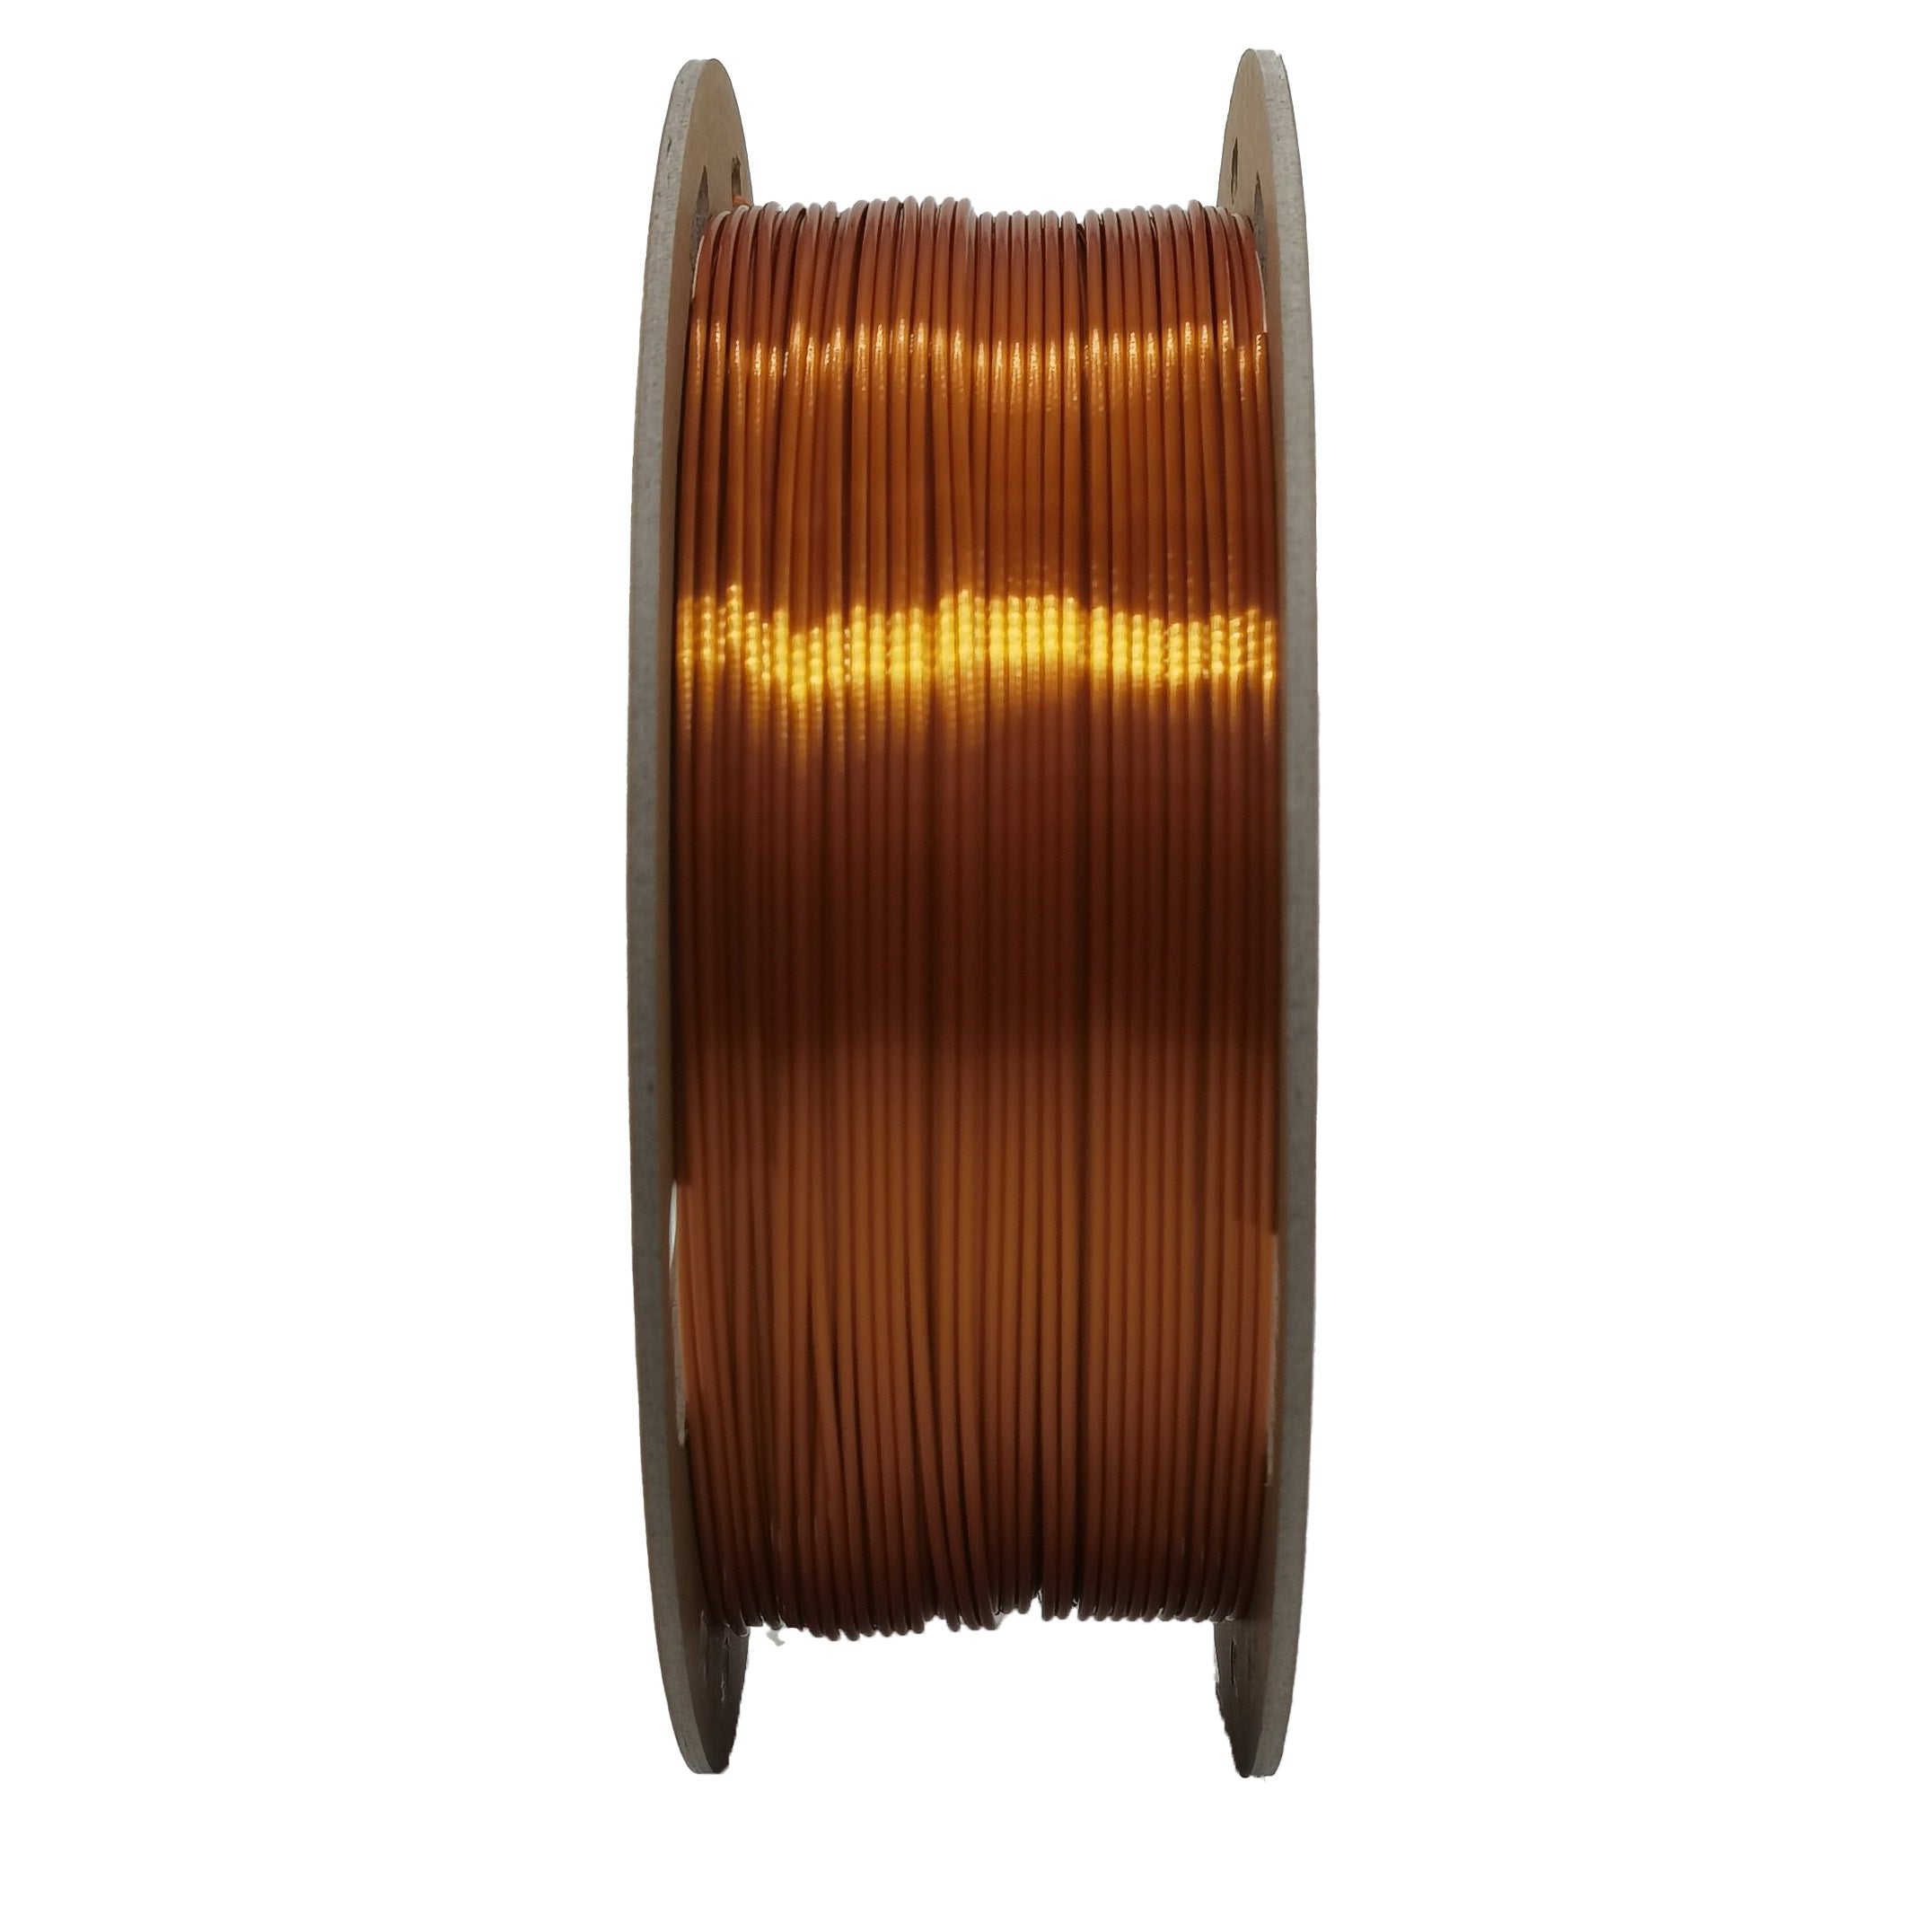 DREMC Silk PLA Filament 1.75mm 1kg